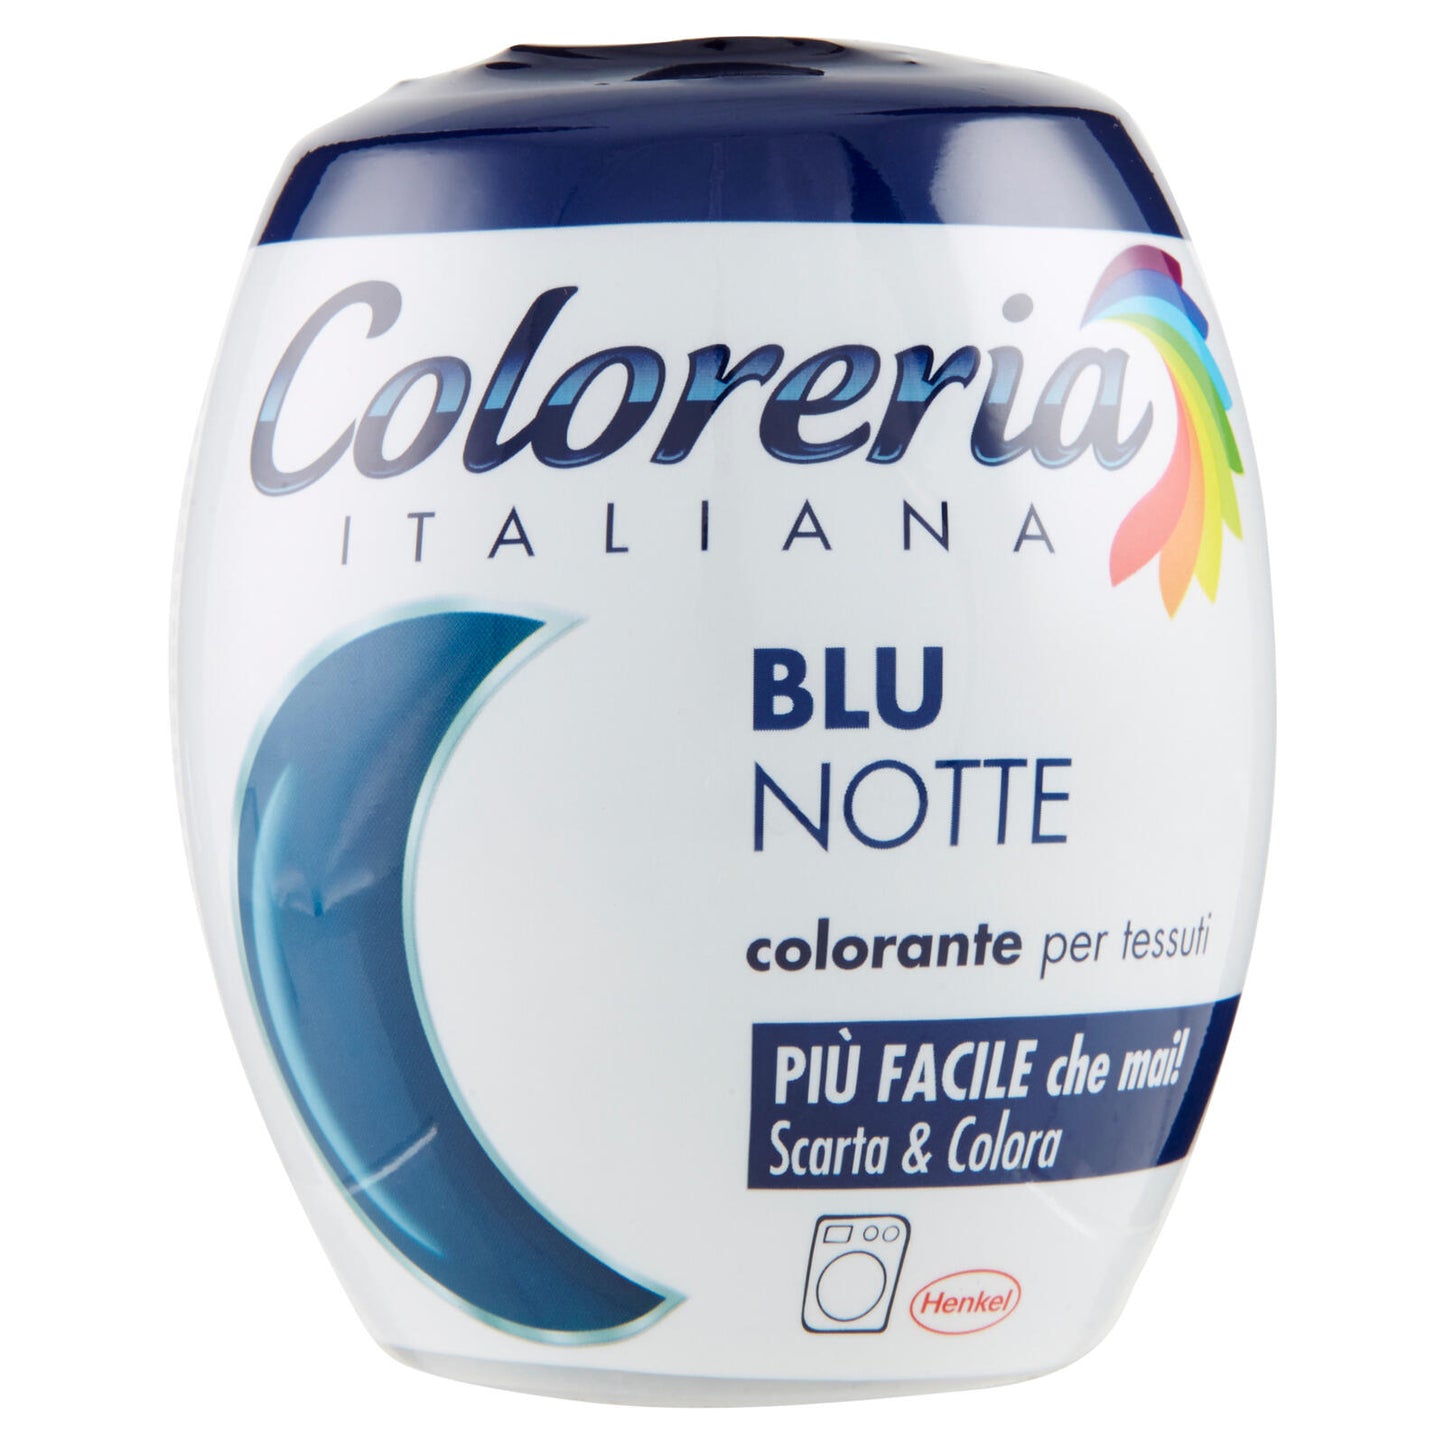 COLORERIA Blu Notte 350 gr.